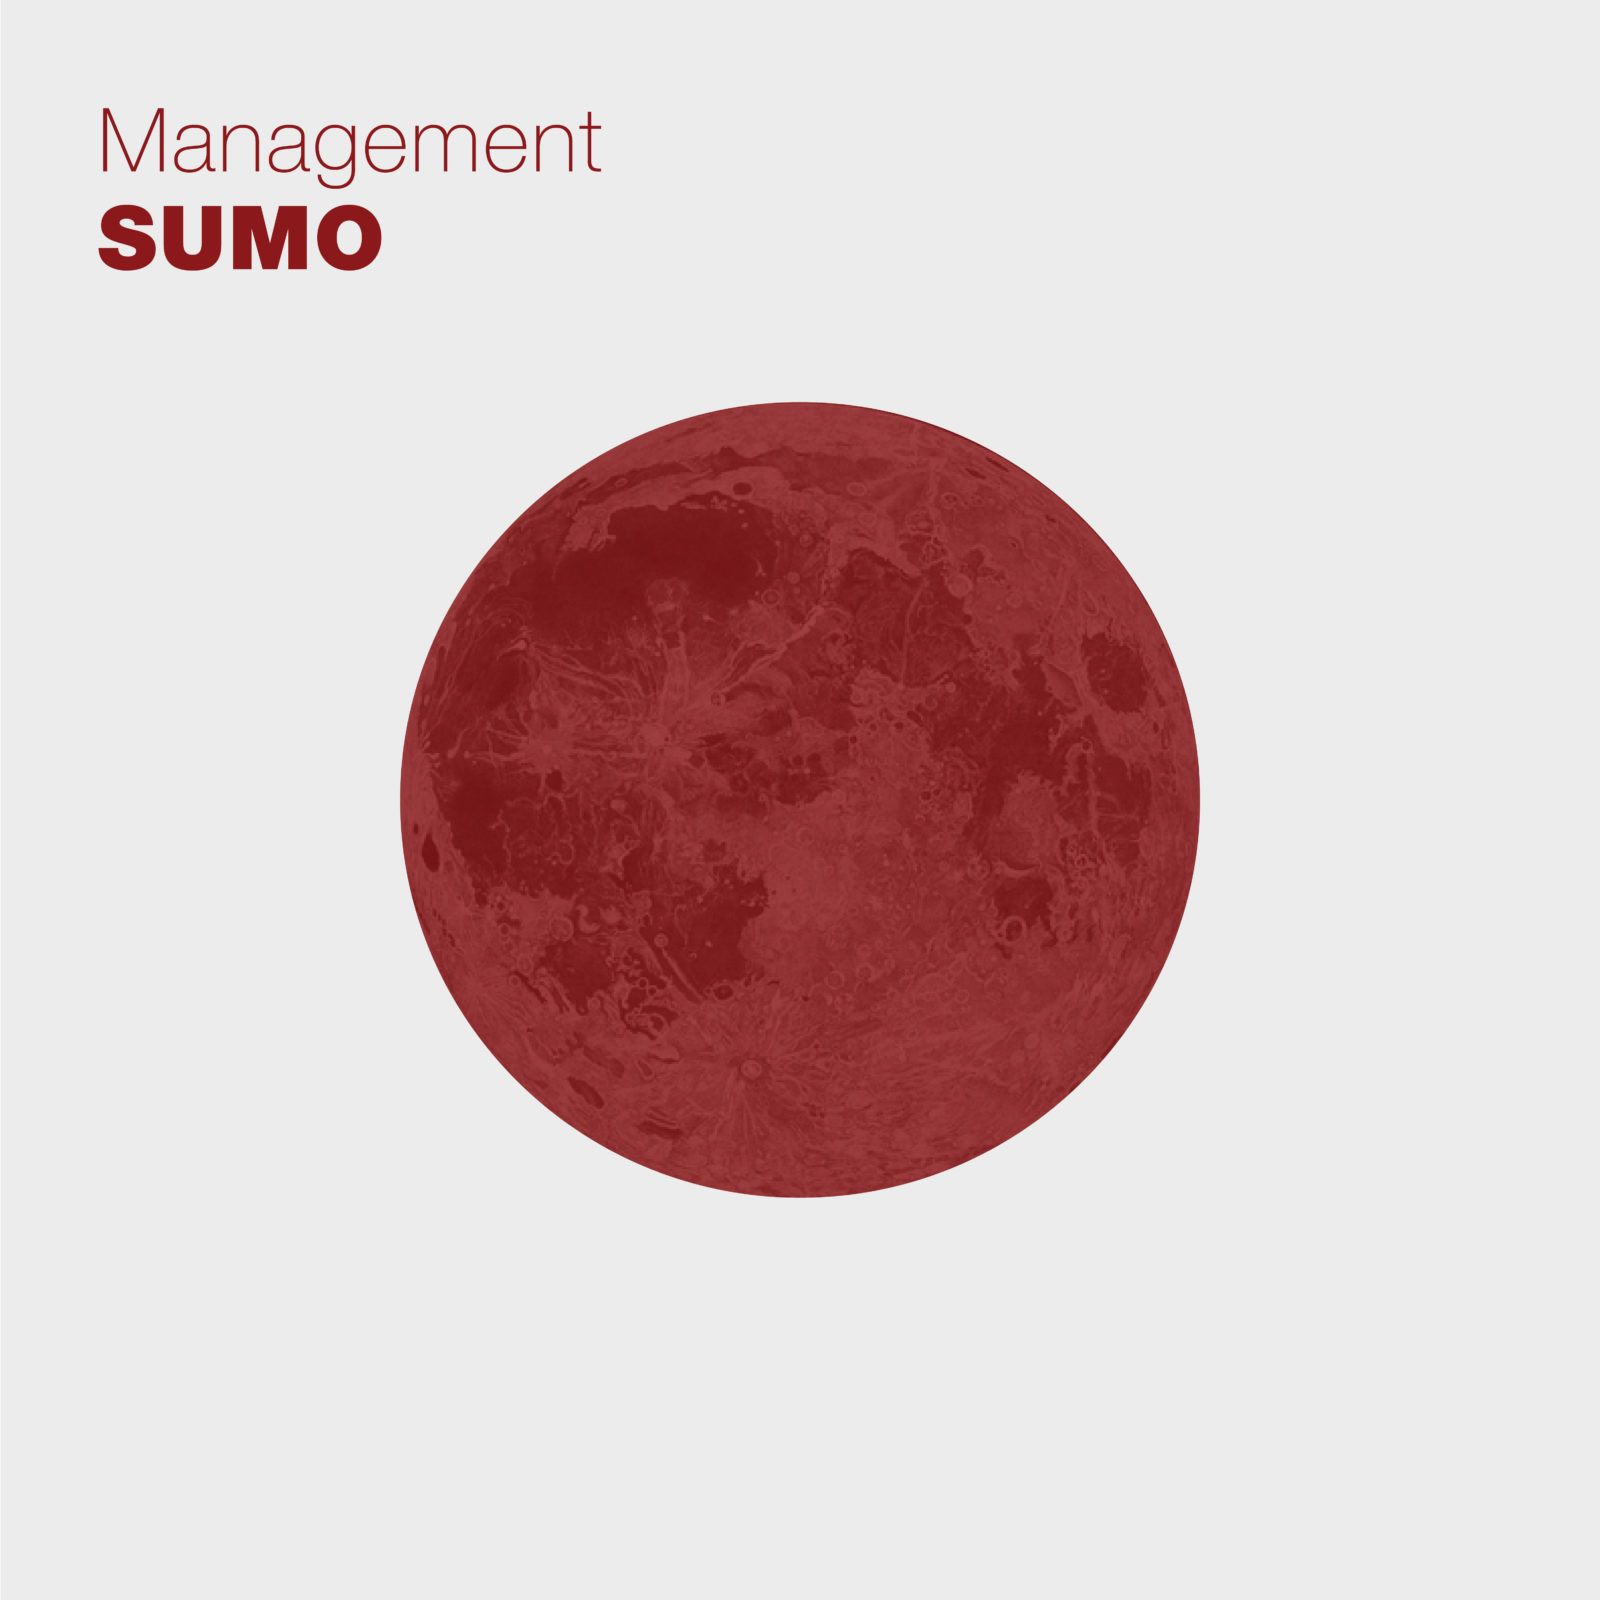 Sumo Management cover